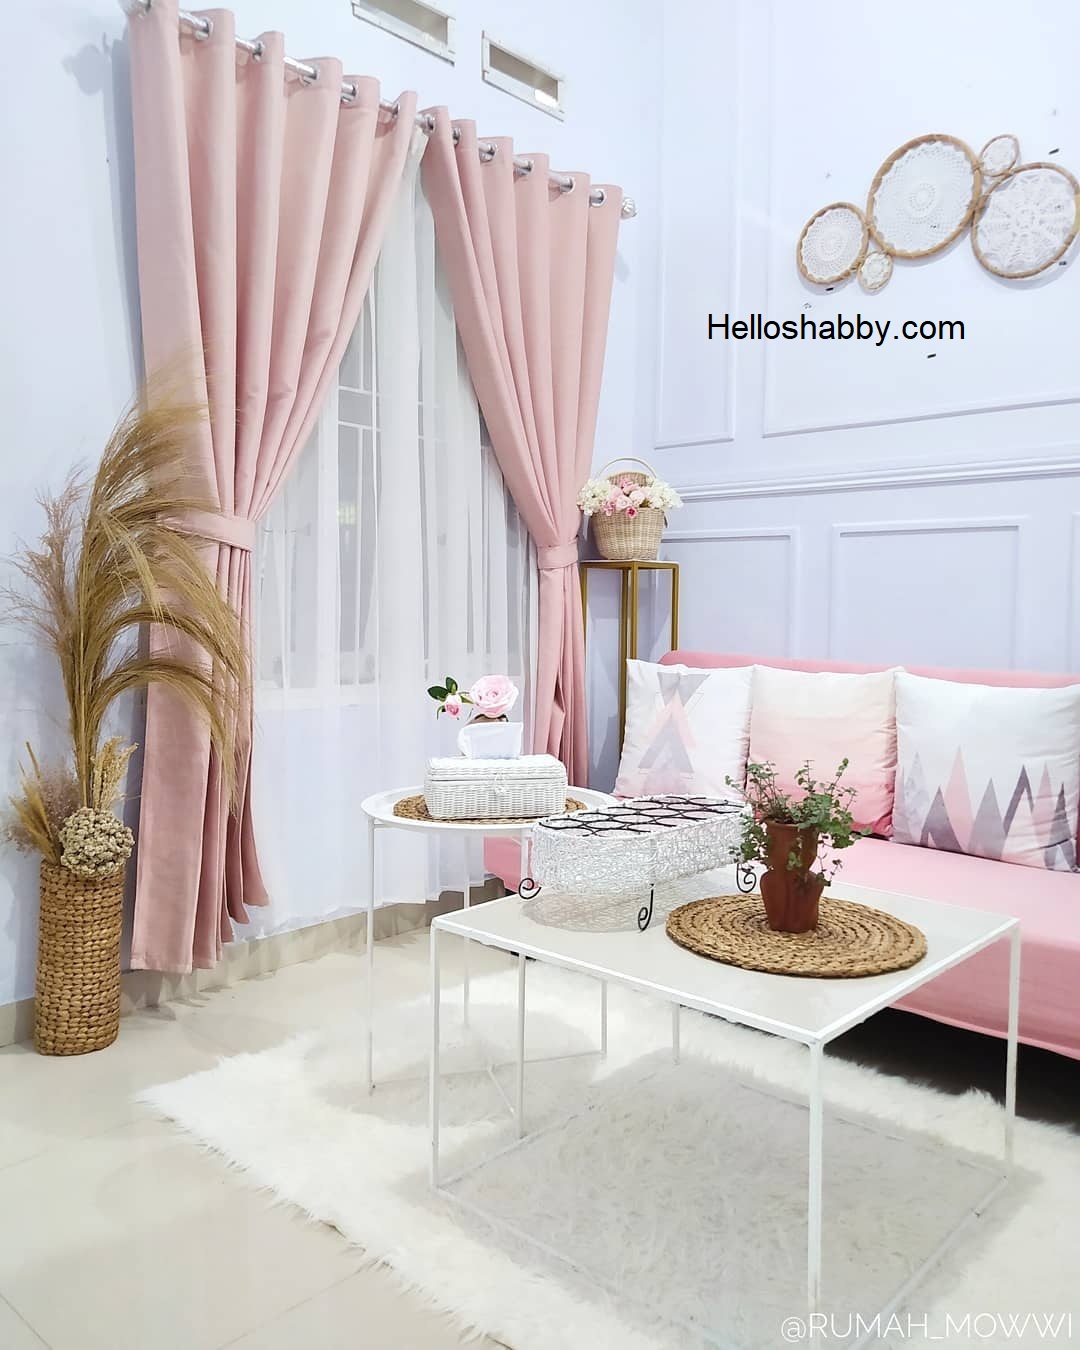 Desain Ruang Tamu Mungil Dengan Sentuhan Warna Pink Pastel HelloShabbycom Interior And Exterior Solutions